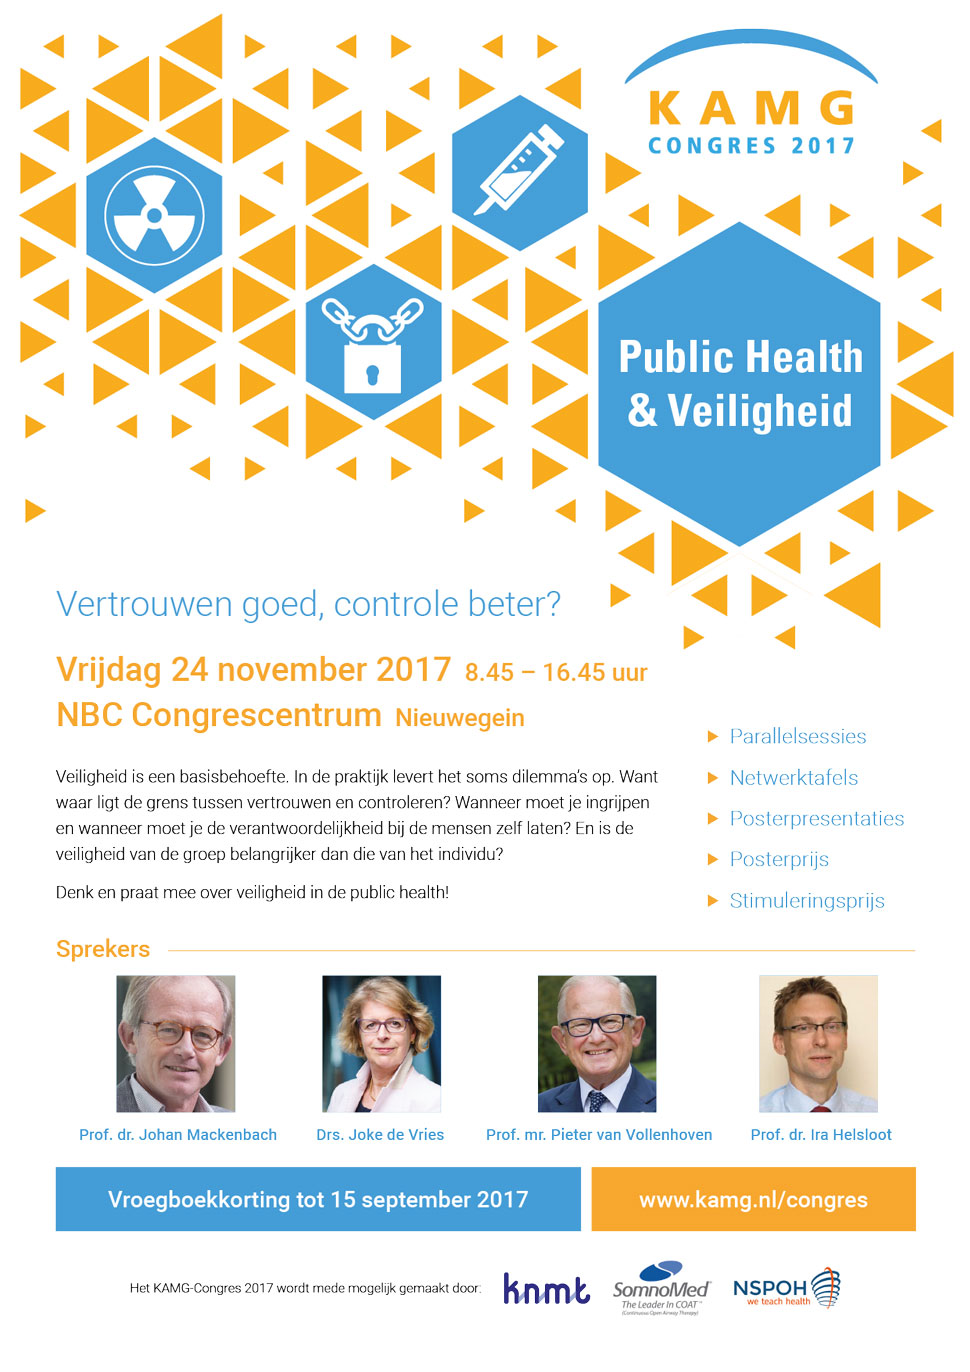 fwww.kamg.nl/congres